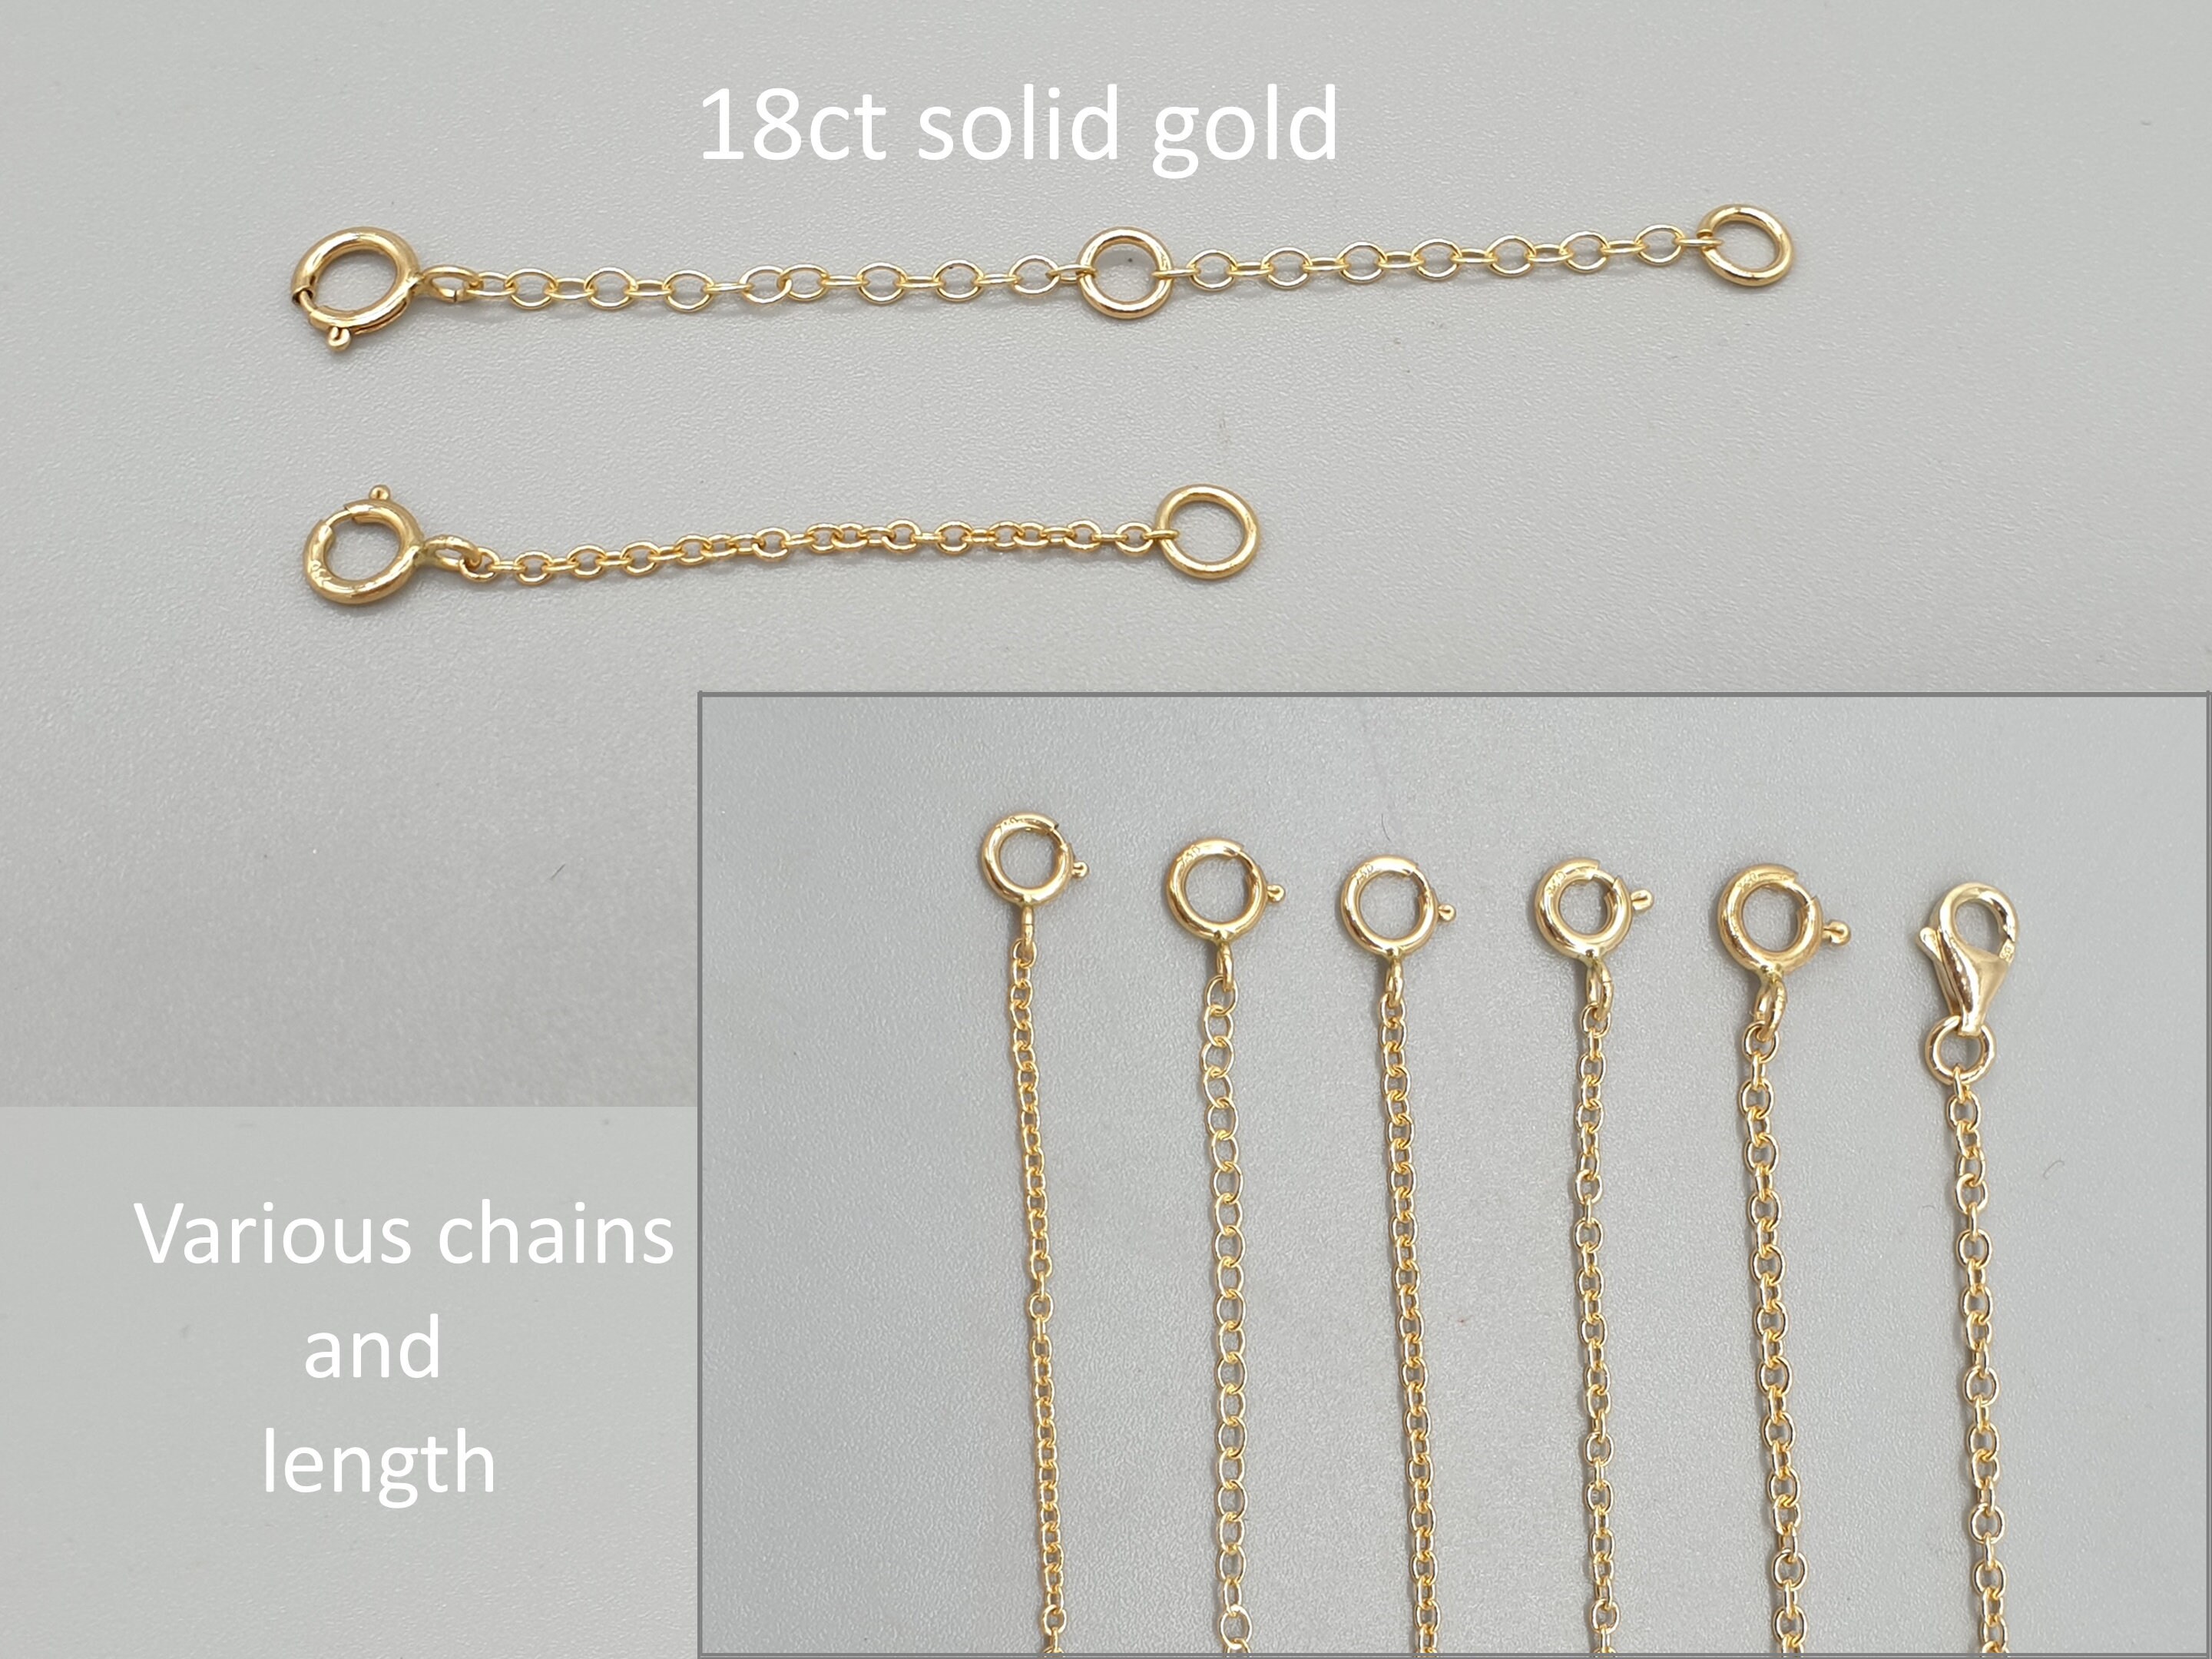 Vintage 5,30gr 750 Gold Bracelet Stacking Bracelet 18k Link Chain